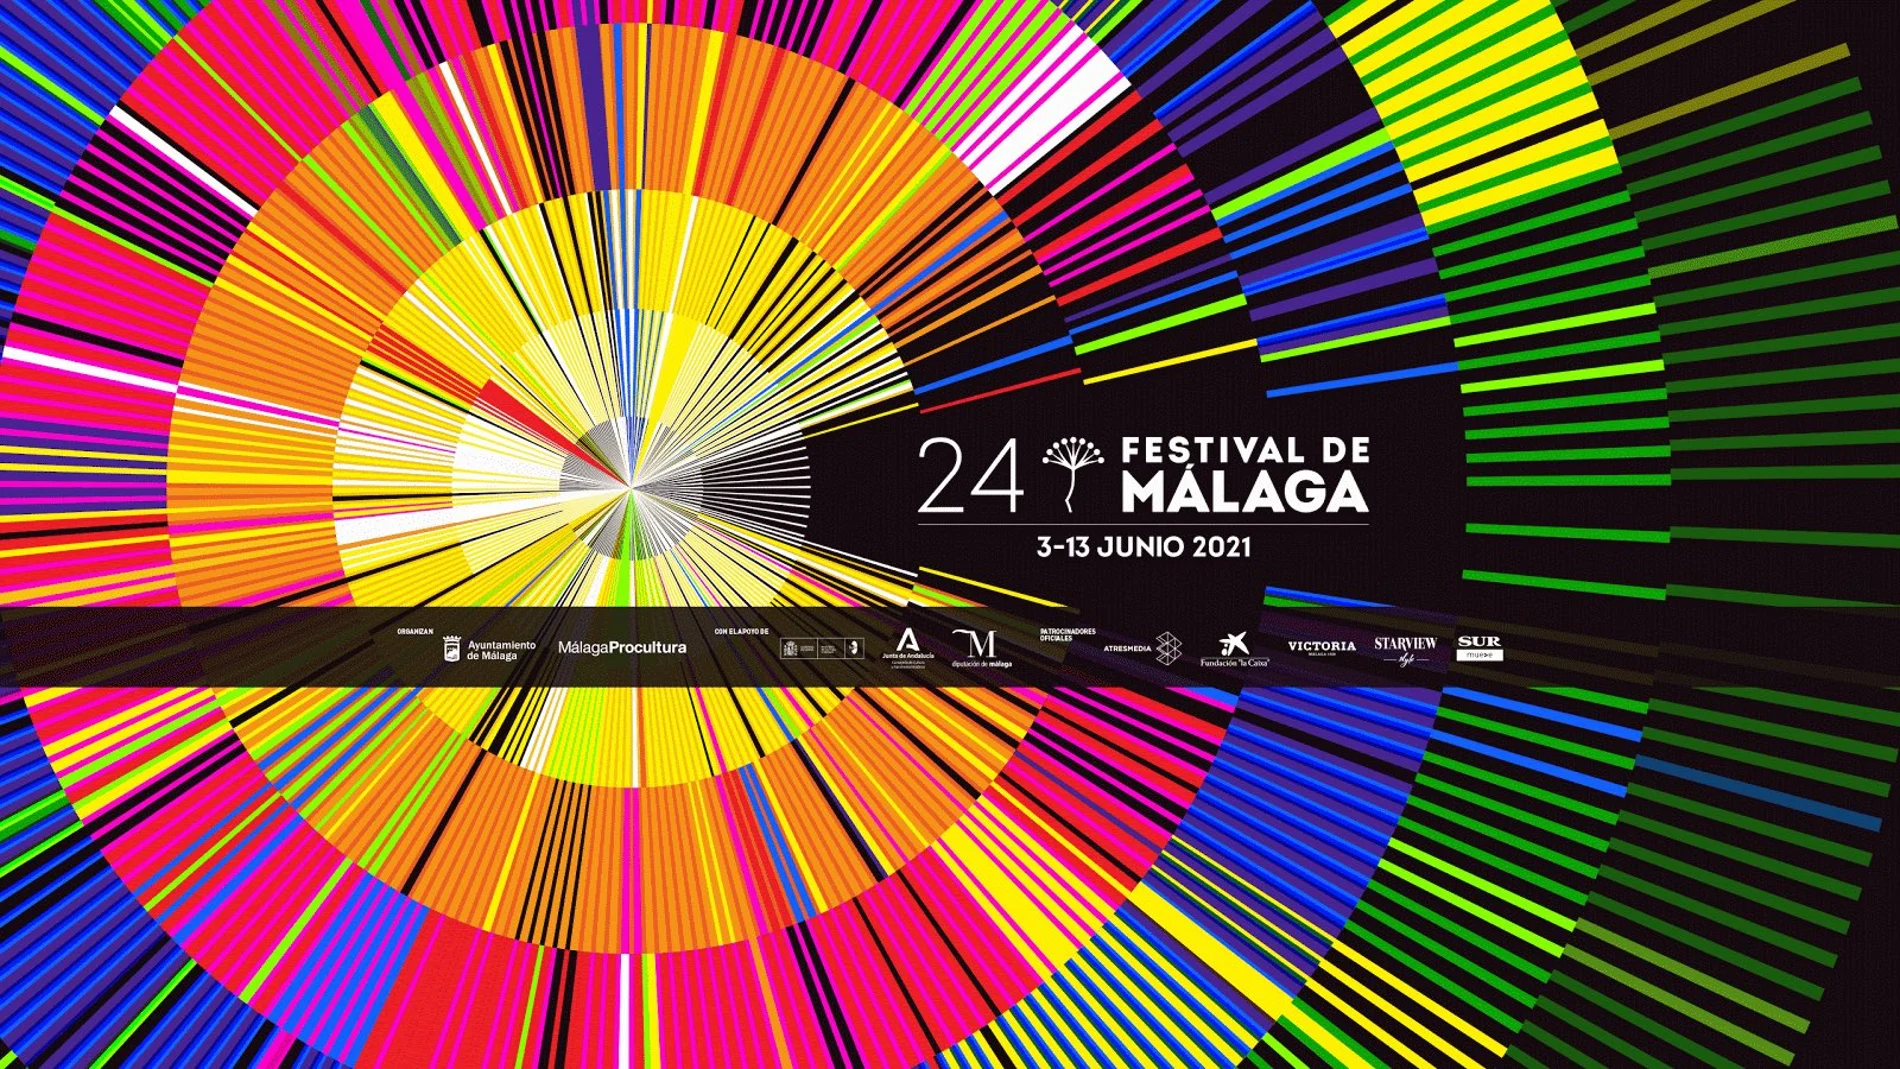 Cartel de la 24.ª Edición del Festival de Málaga, que inaugurará "El cover" de Secun de la Rosa